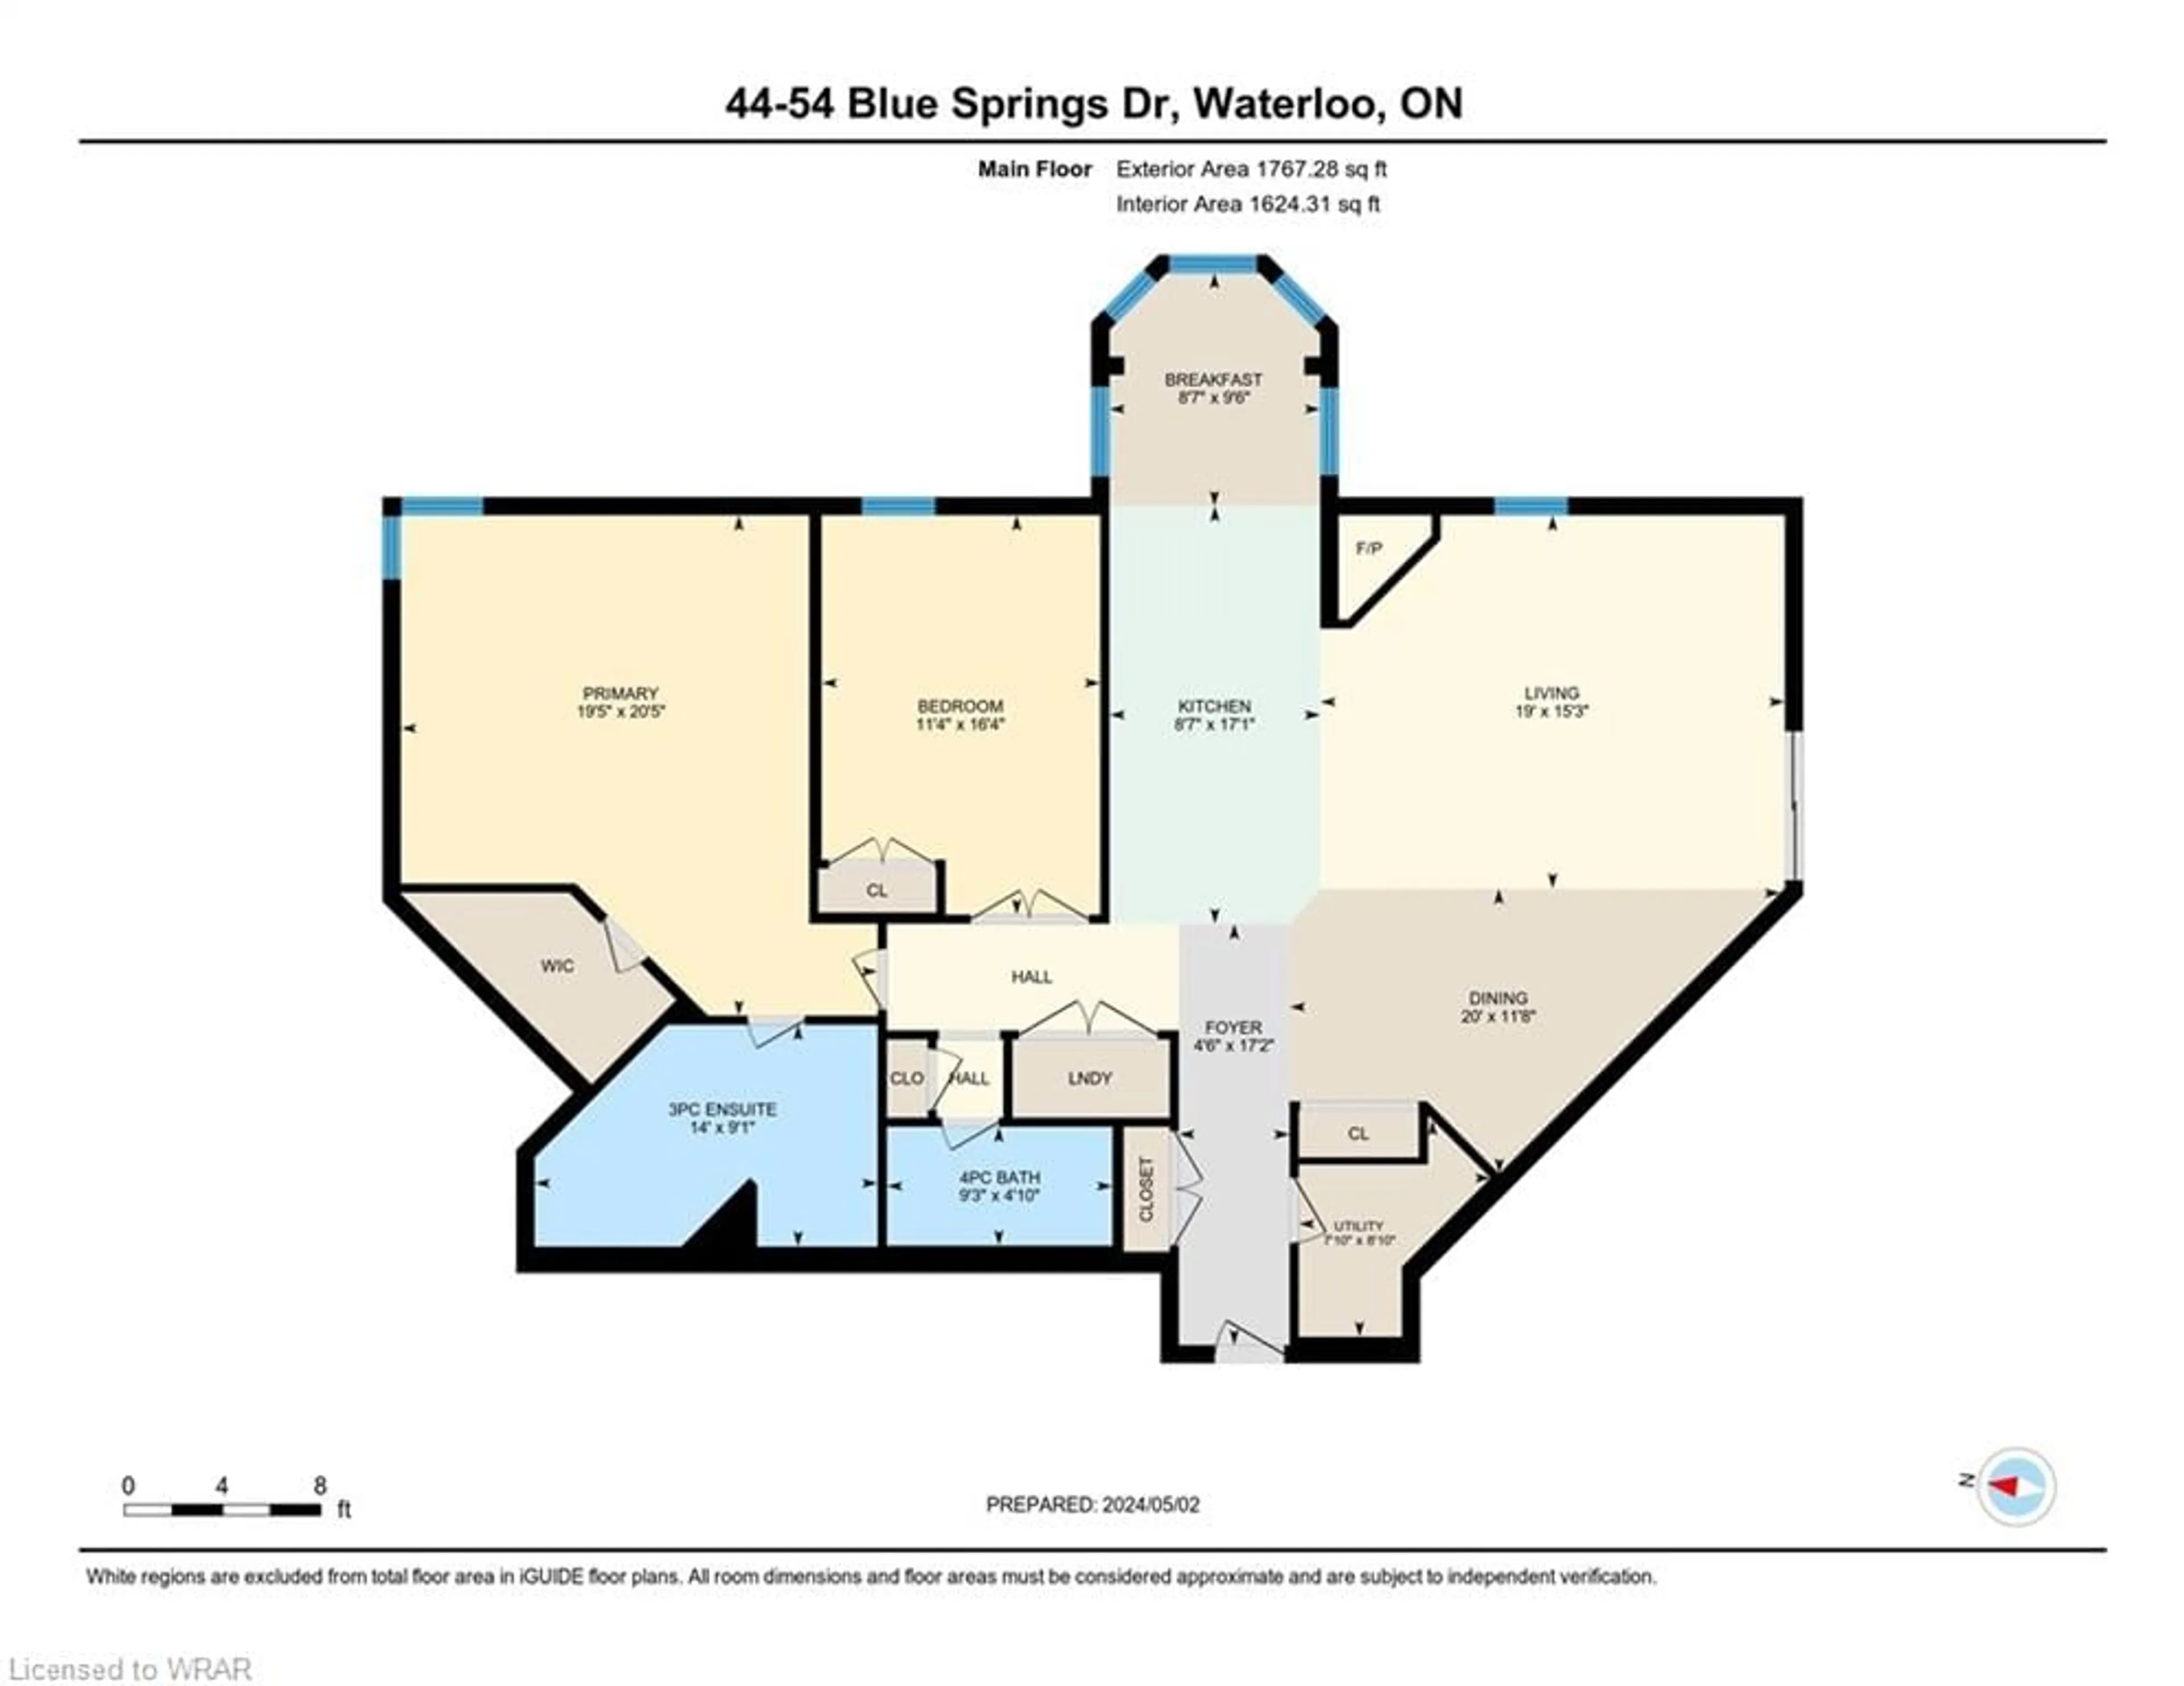 Floor plan for 54 Blue Springs Dr #44, Waterloo Ontario N2J 4T3